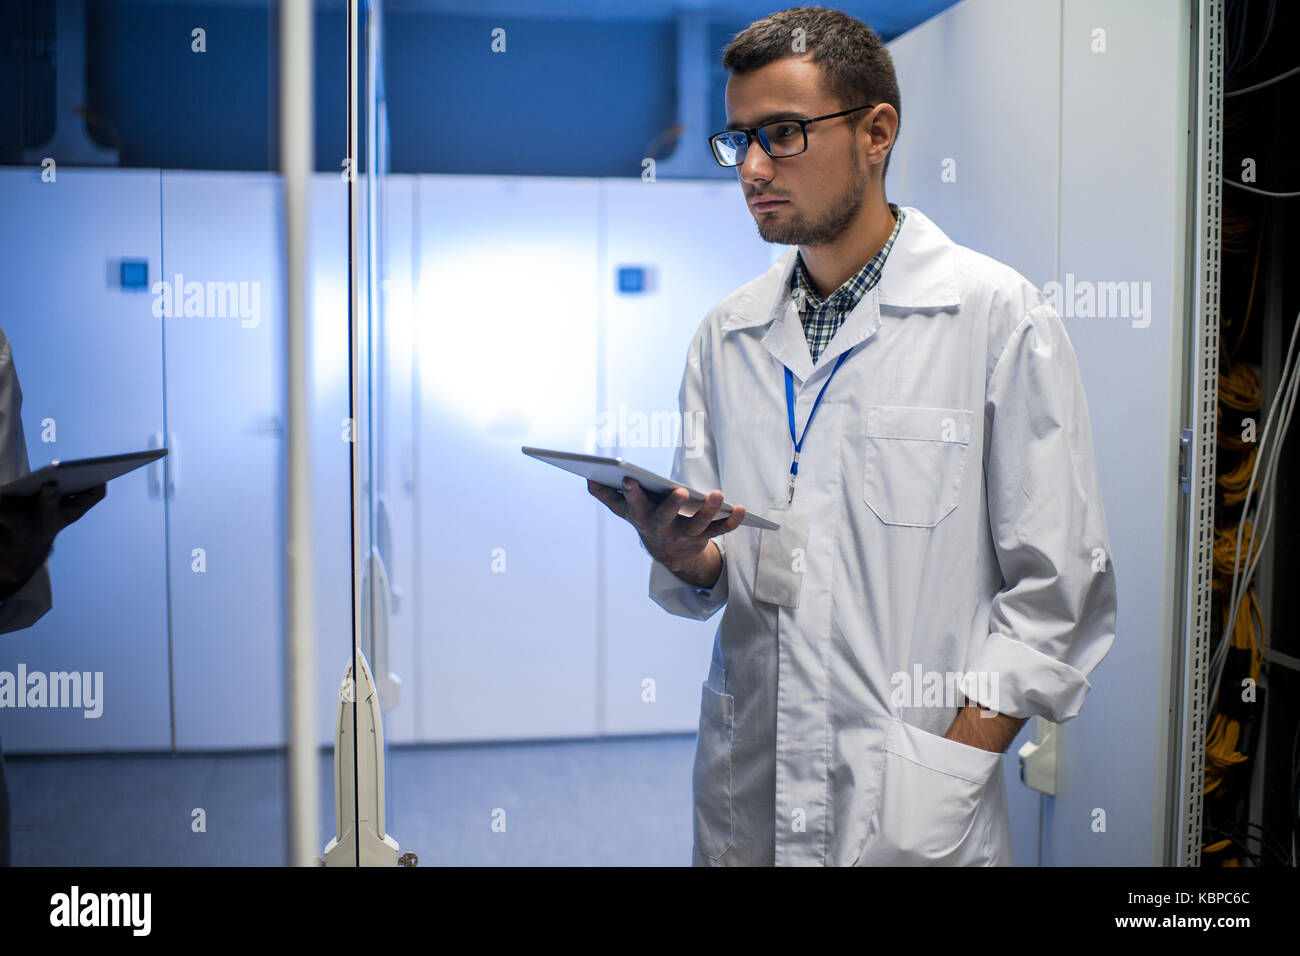 Portrait de jeune ingénieur réseau holding digital tablet debout entre les cabinets de serveurs dans le centre de recherches supercalculateur Banque D'Images